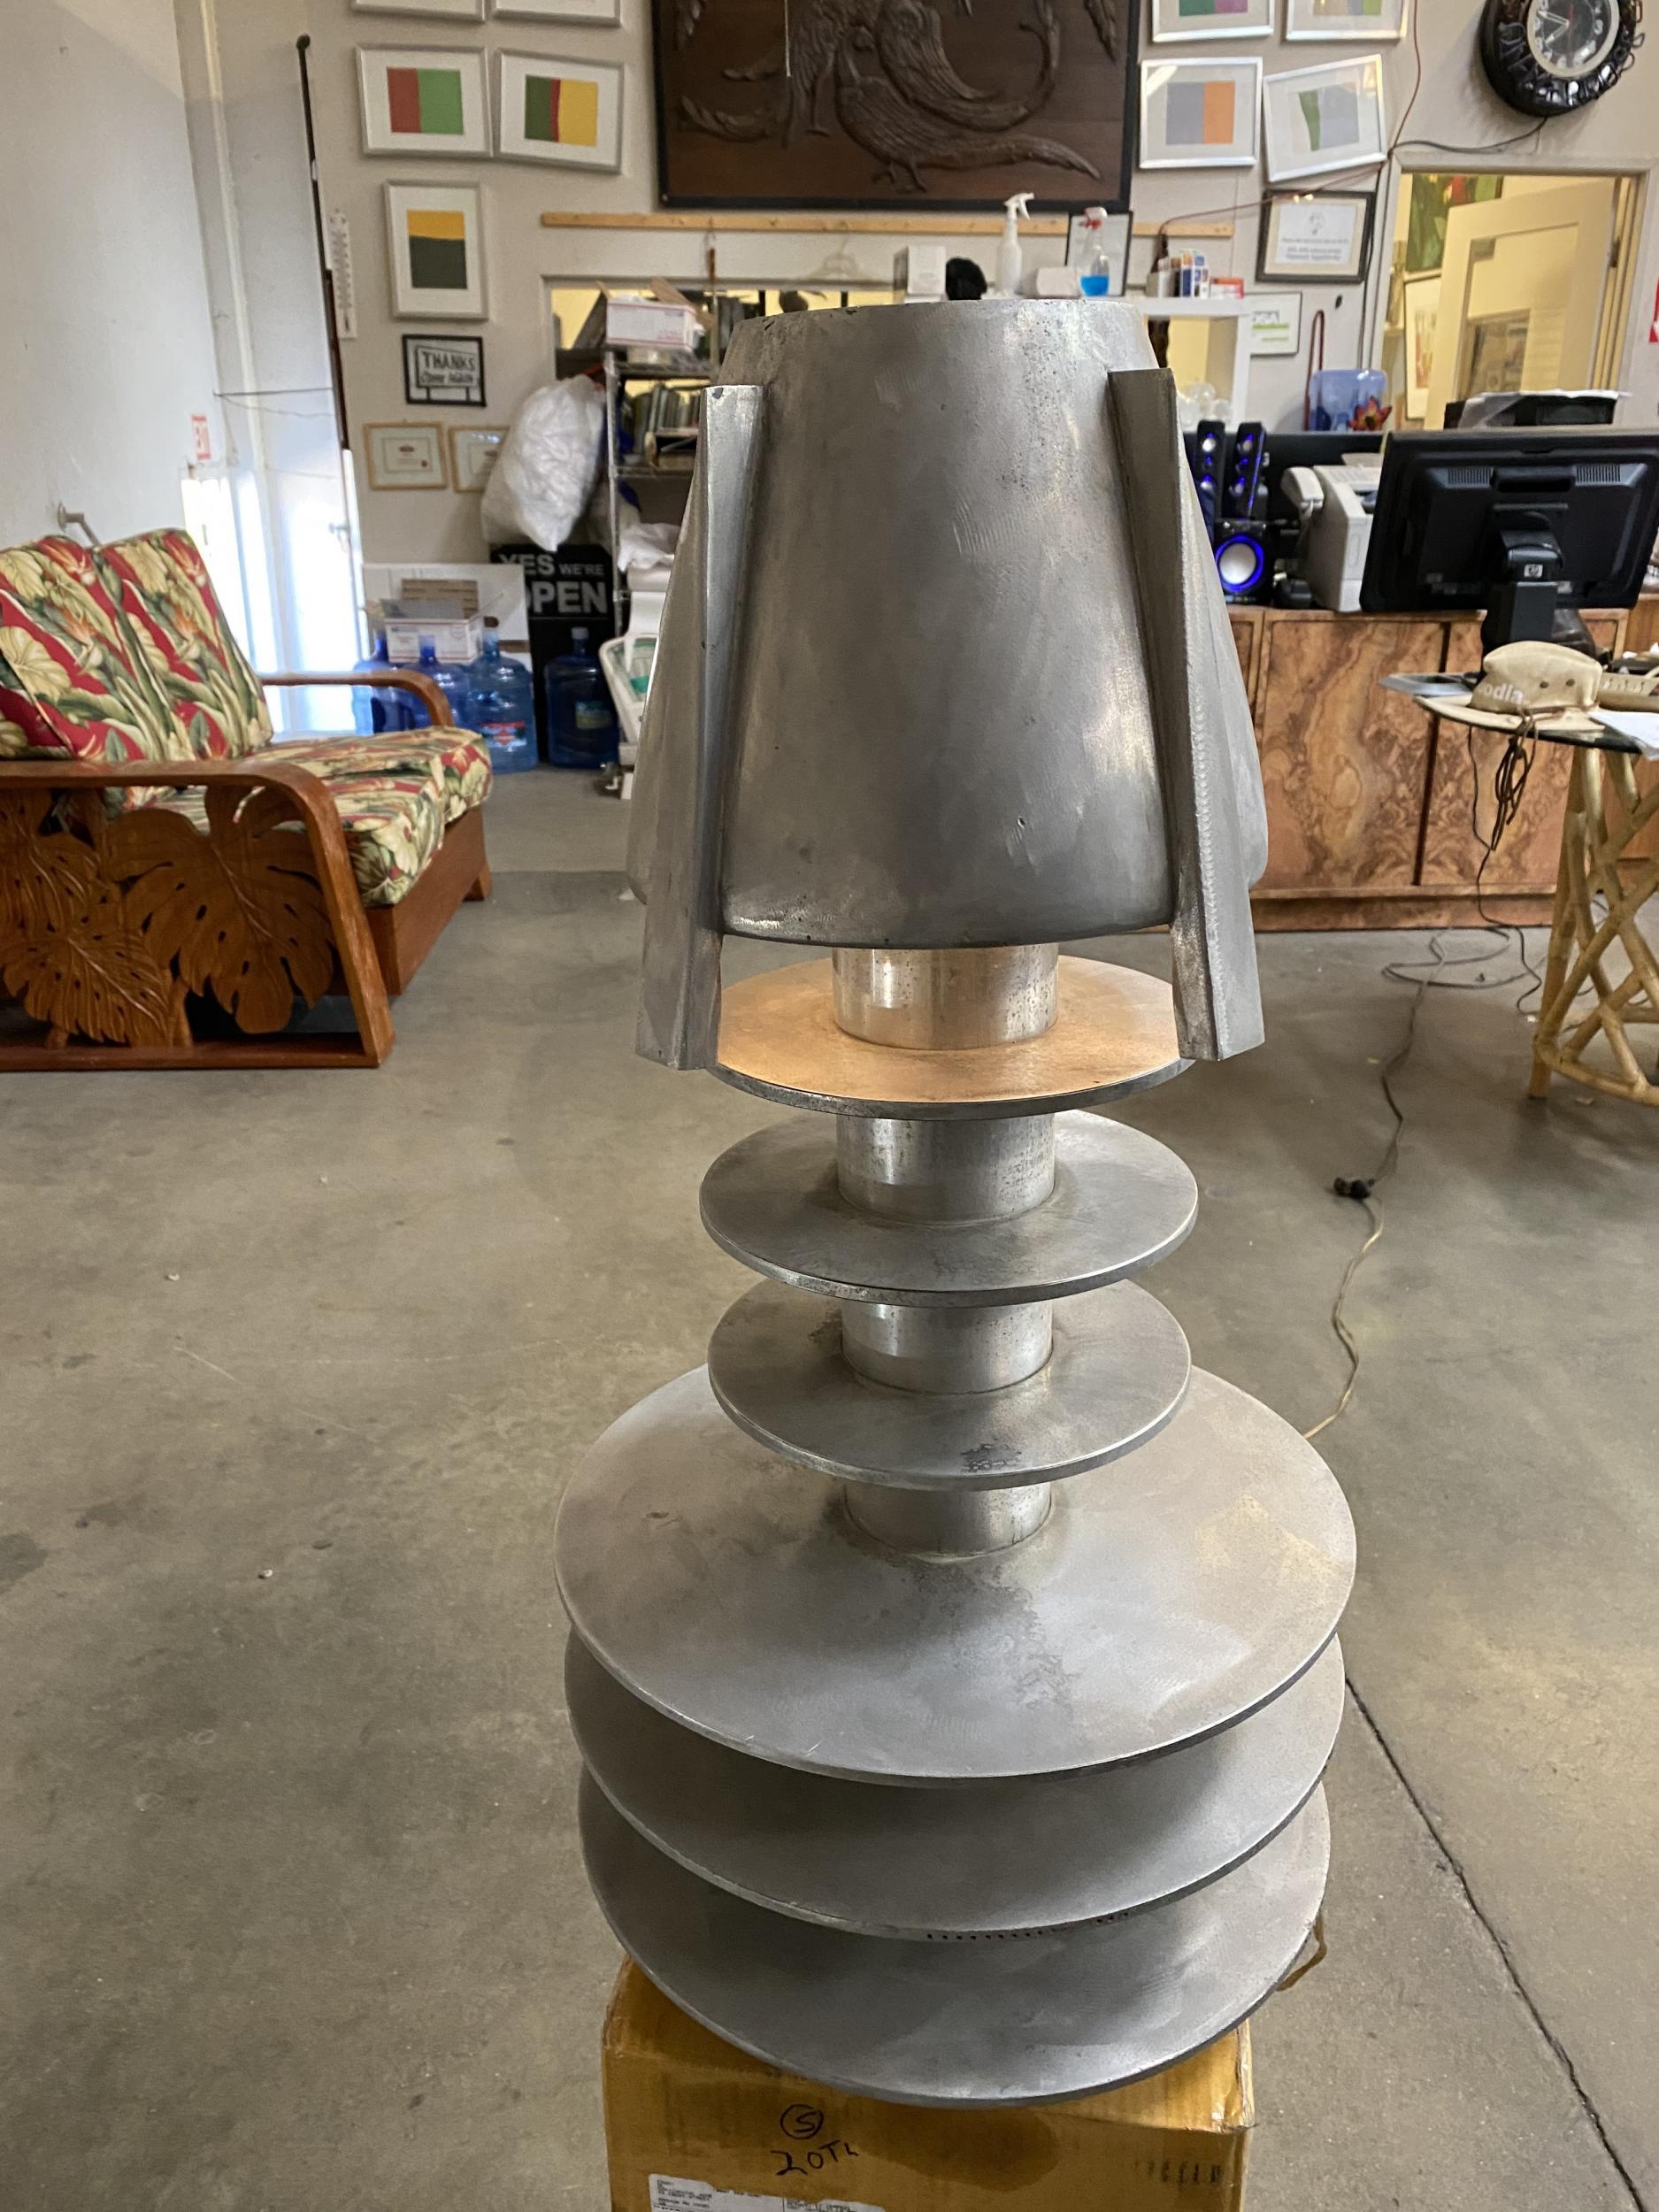 Lampe clignotante en aluminium pour avion faite sur mesure, avec une lampe fabriquée à partir de pièces de turbine de moteur à réaction. La lampe clignote en une seconde entre deux voltages.